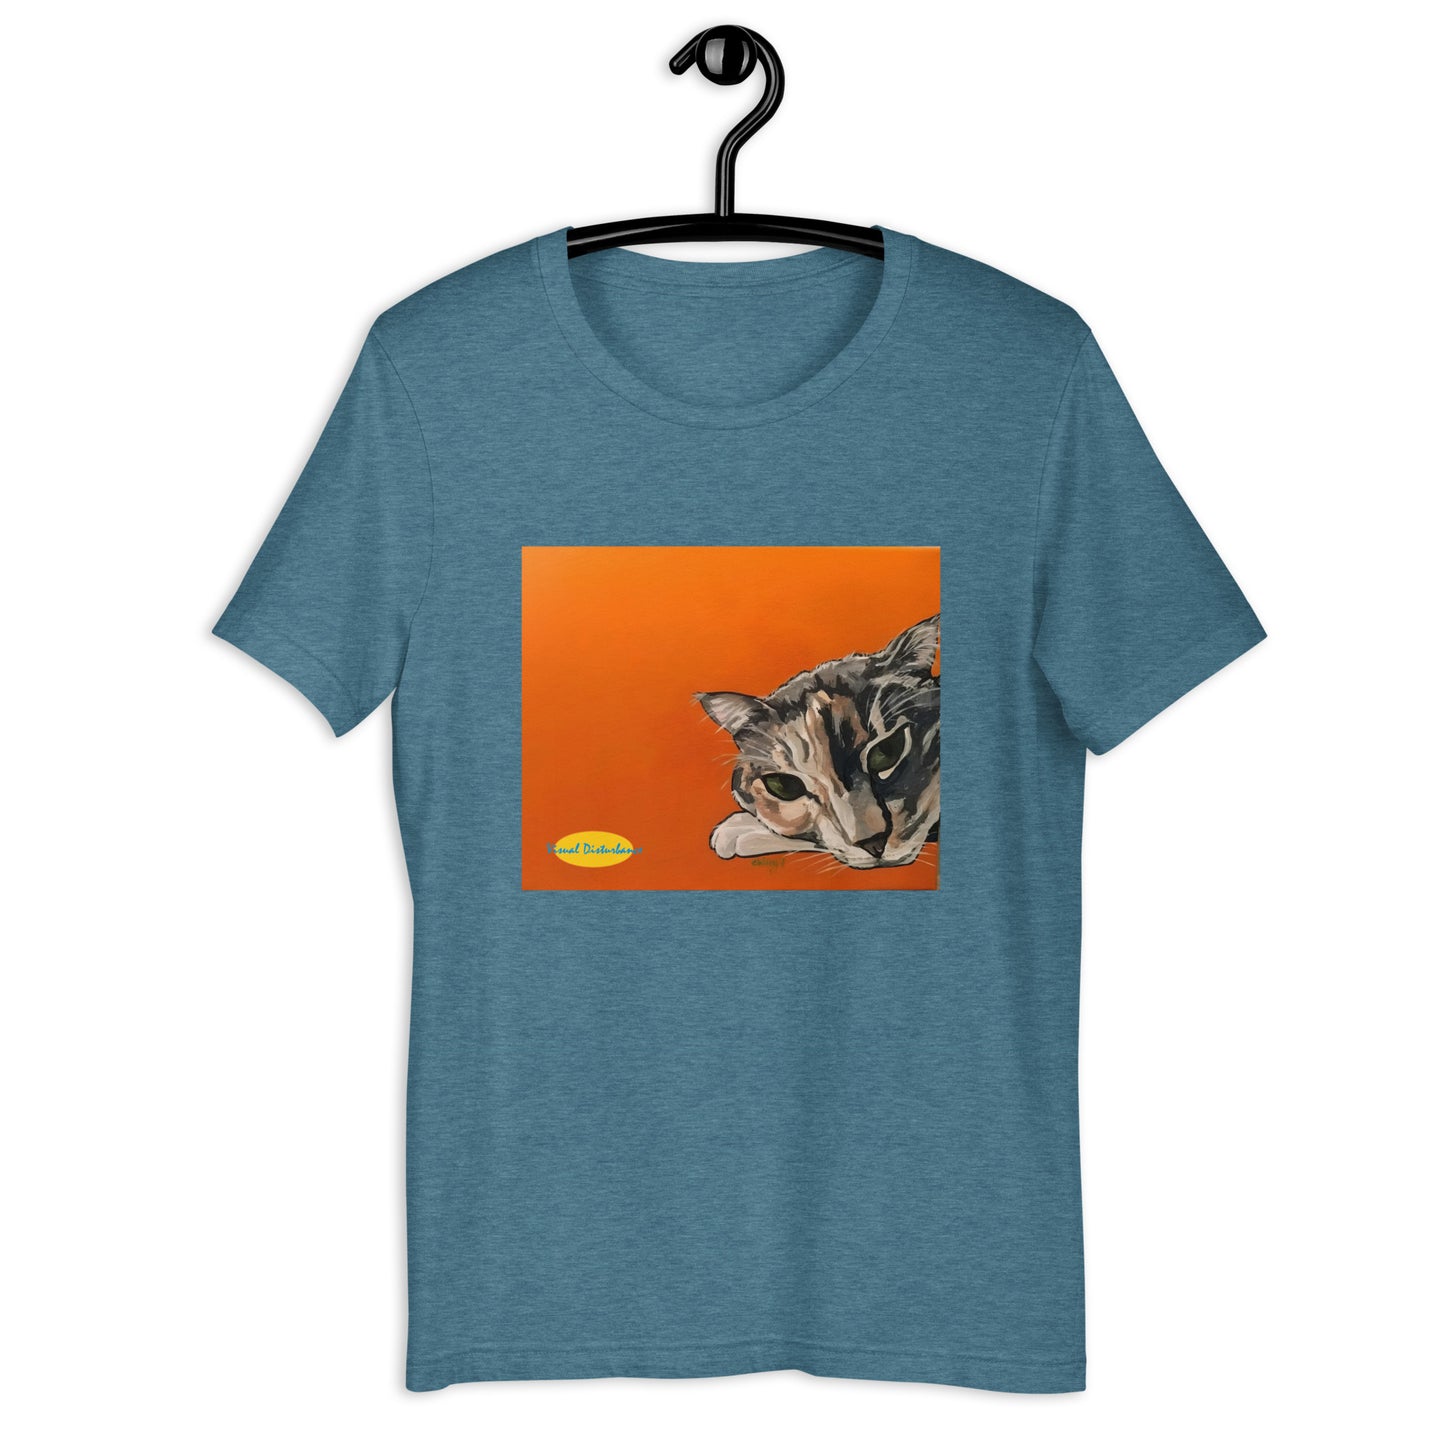 Calico Cat on Orange Unisex t-shirt